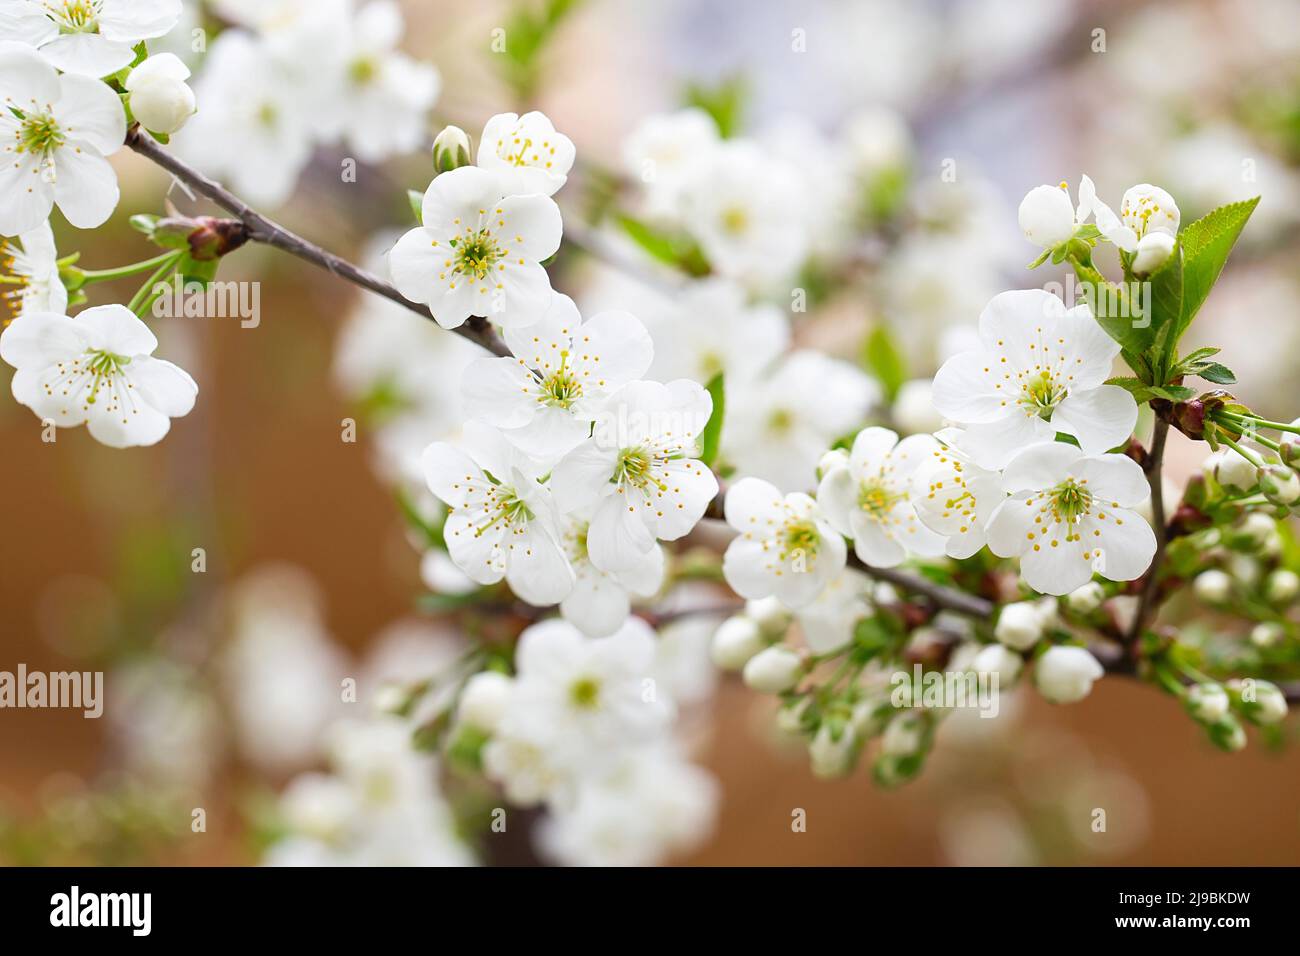 Obstbaum blüht im Frühling. Zarte weiße Blumen baden im Sonnenlicht. Warmes aprilwetter. Blühender Baum im Frühling, Internet-Frühlingsbanner. S Stockfoto